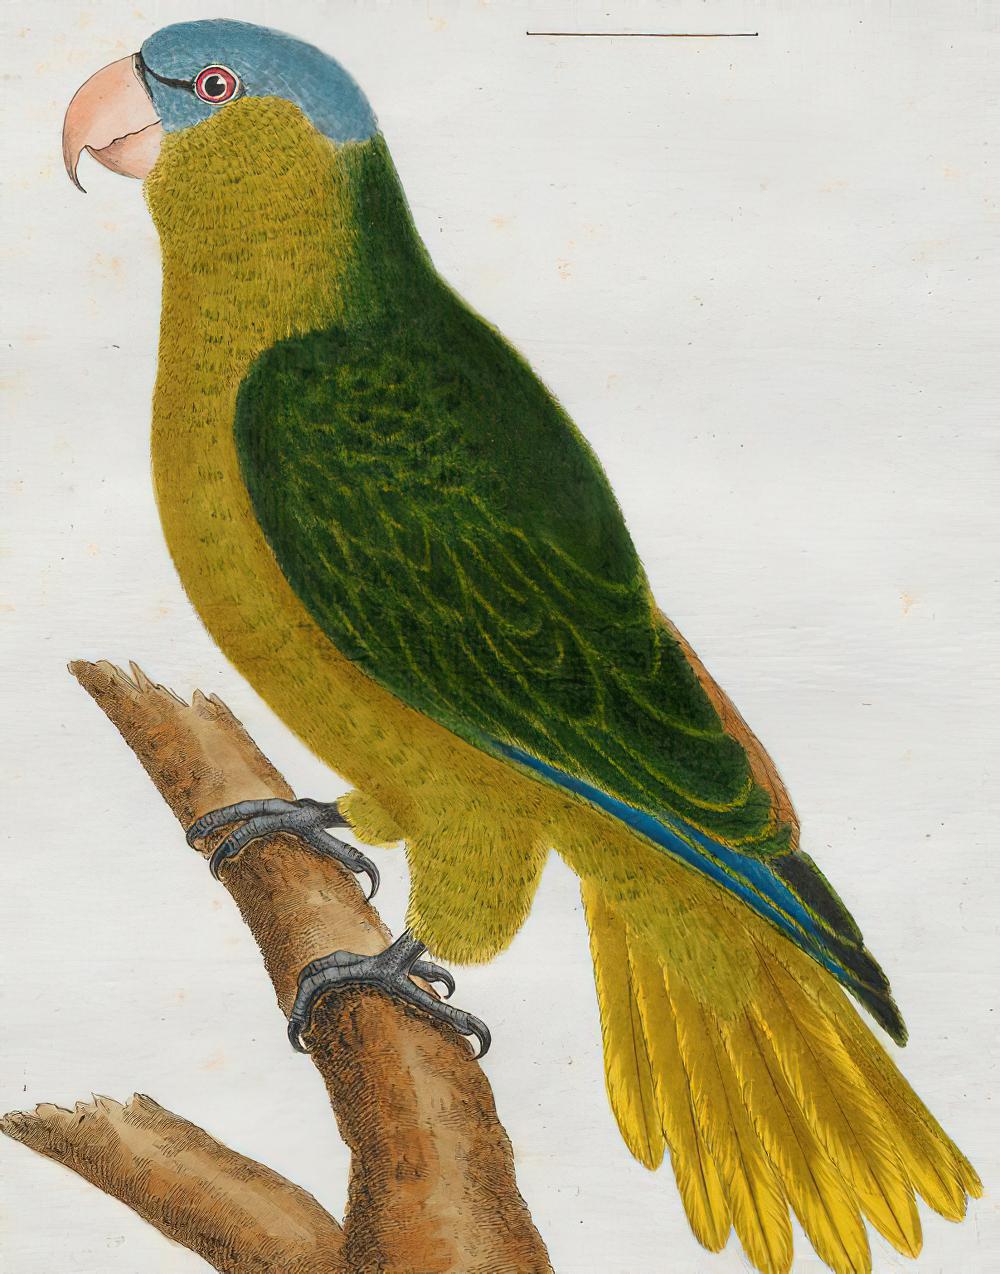 黑眼先鹦鹉 / Black-lored Parrot / Tanygnathus gramineus